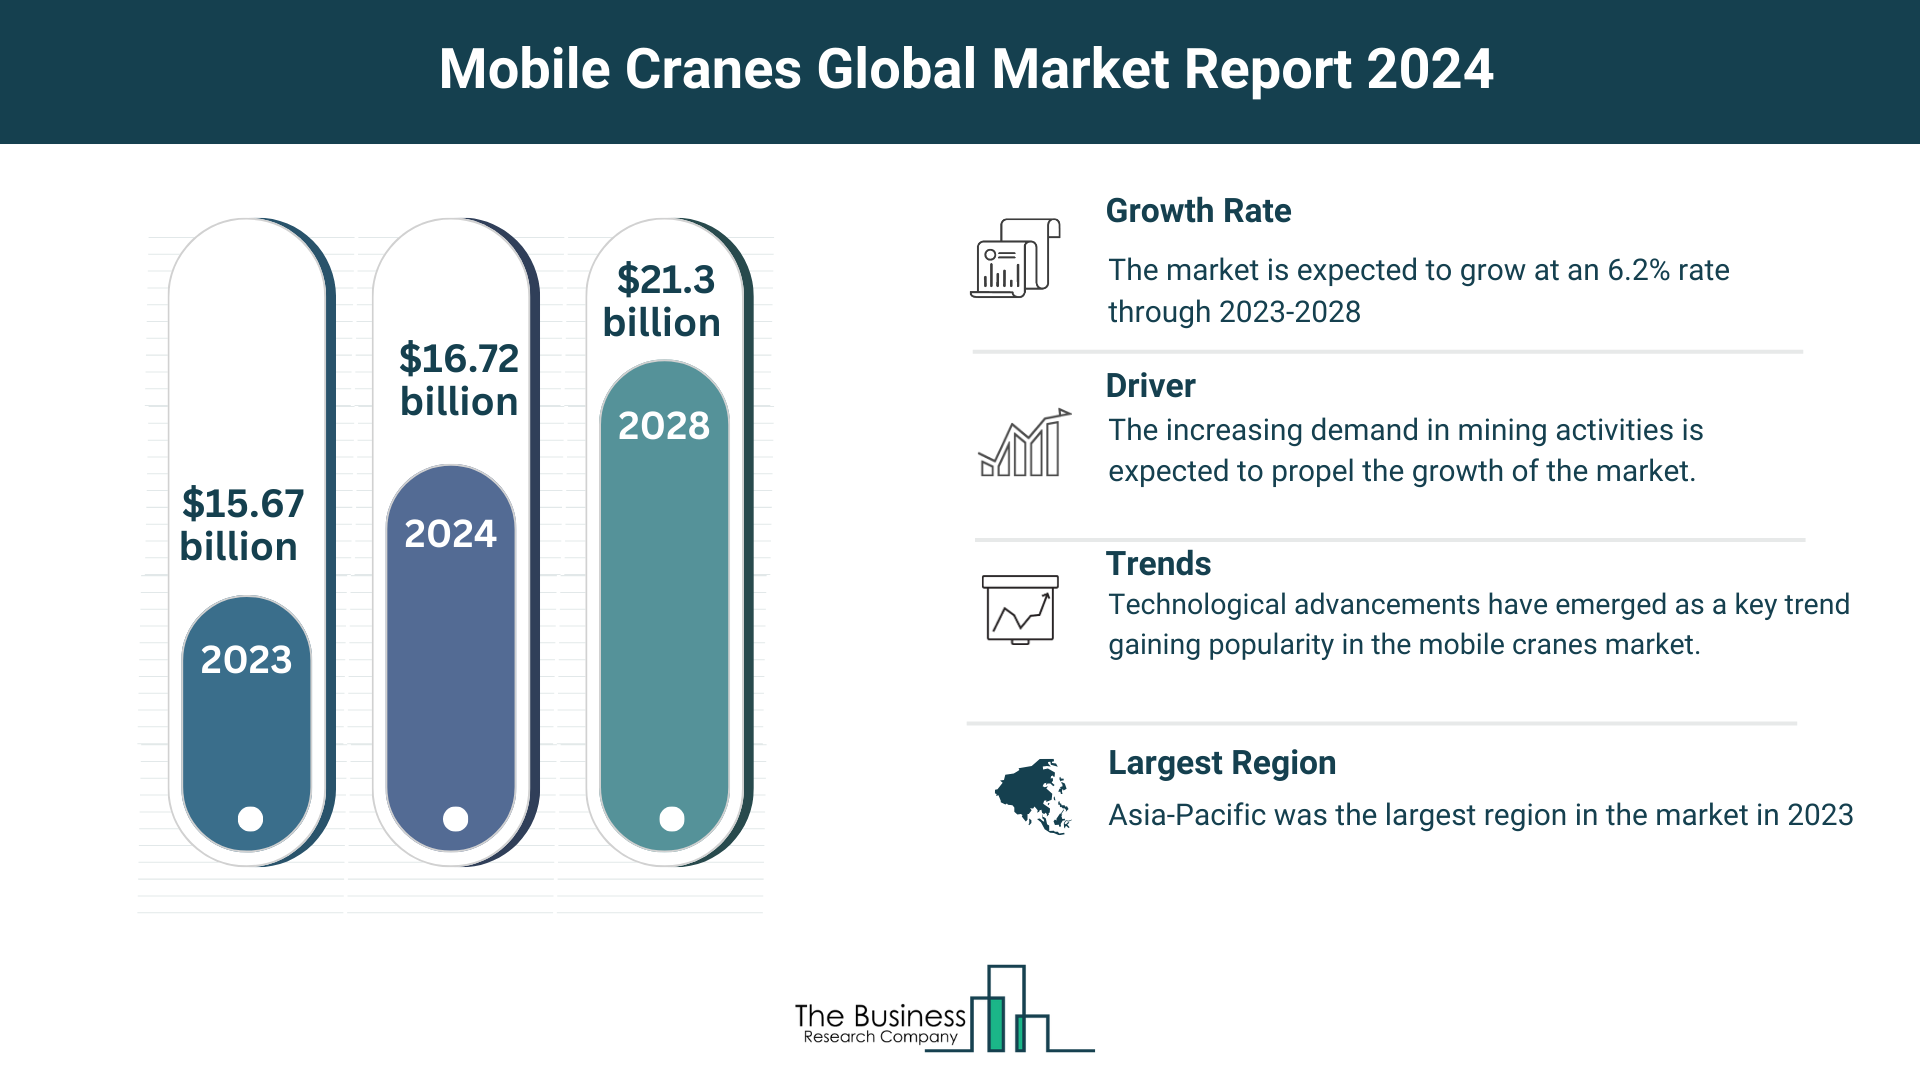 Global Mobile Cranes Market